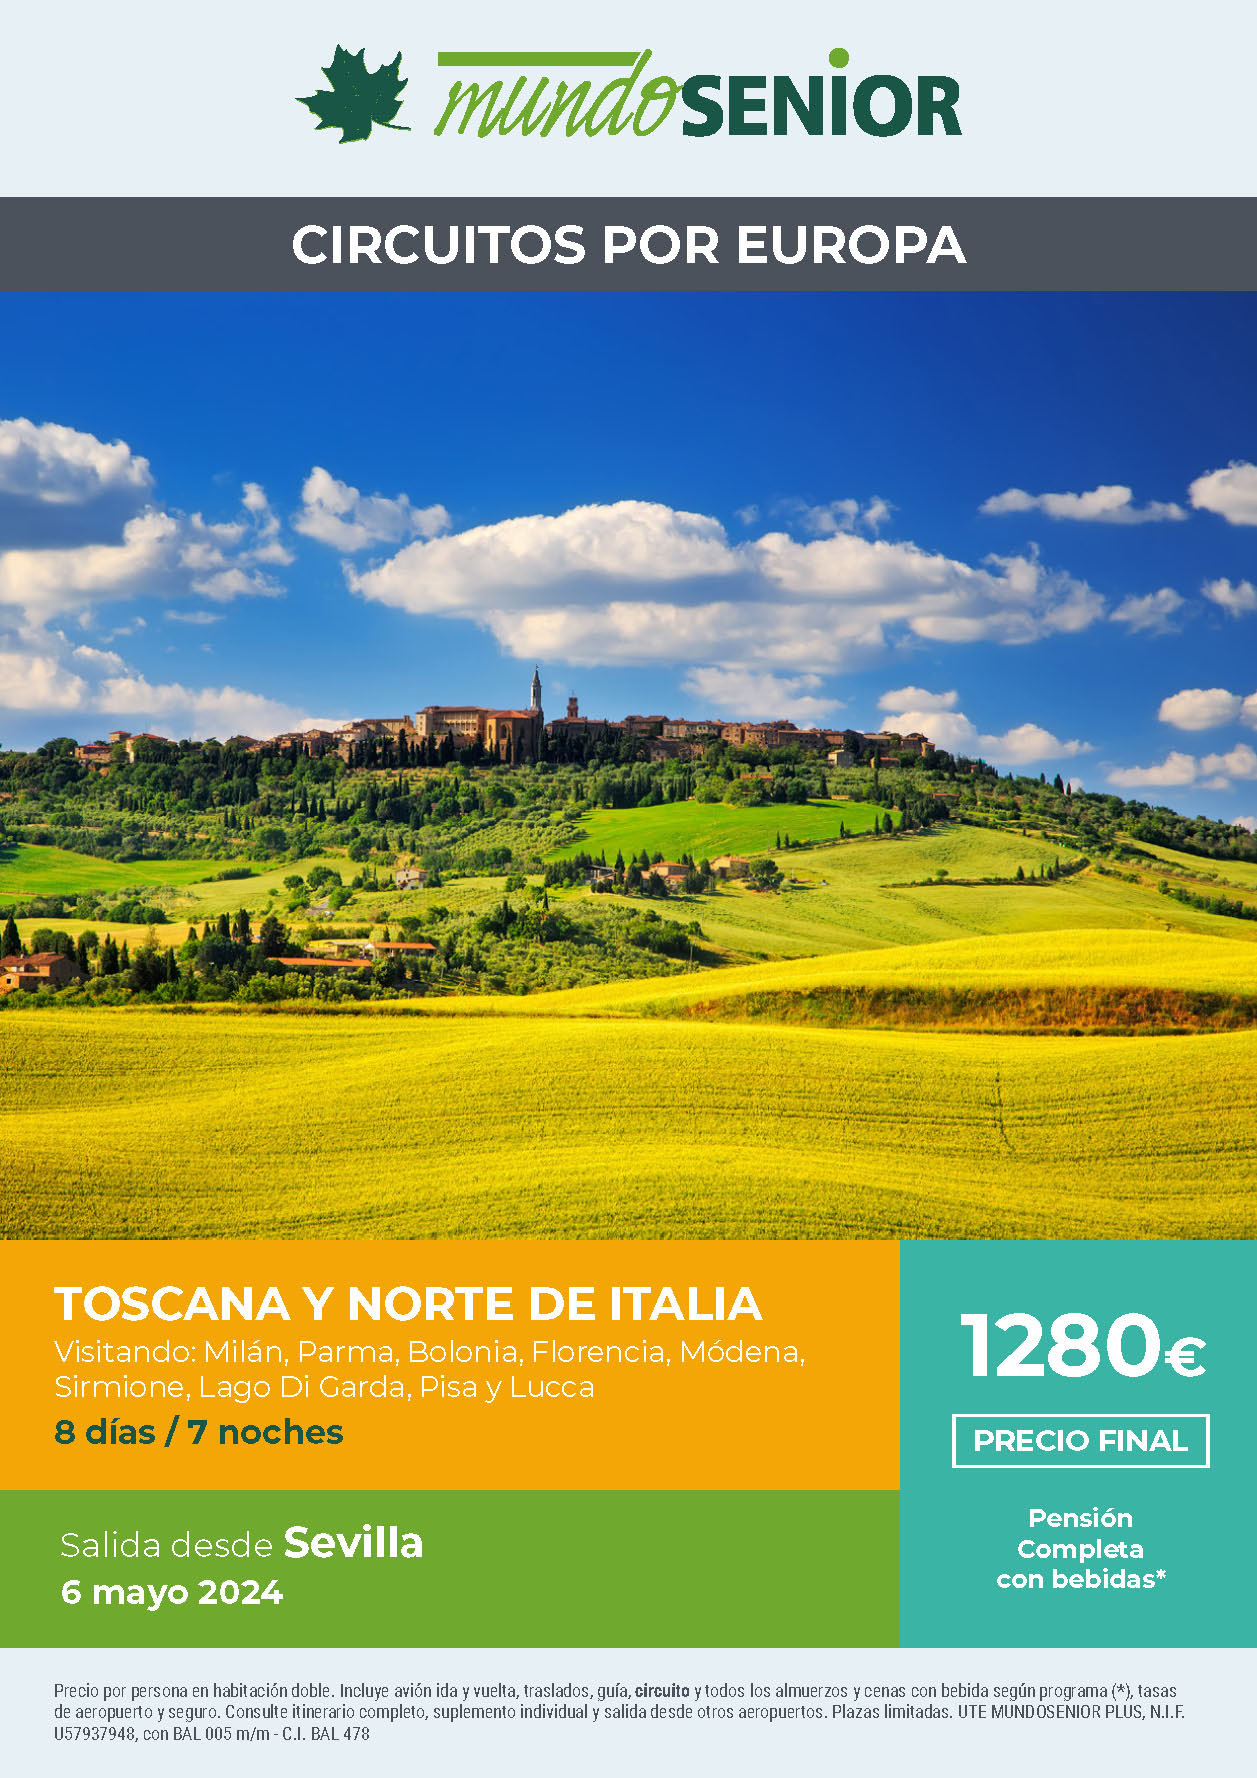 Oferta Mundo Senior circuito Toscana y Norte de Italia 8 dias Pension Completa salida 6 mayo 2024 desde Sevilla